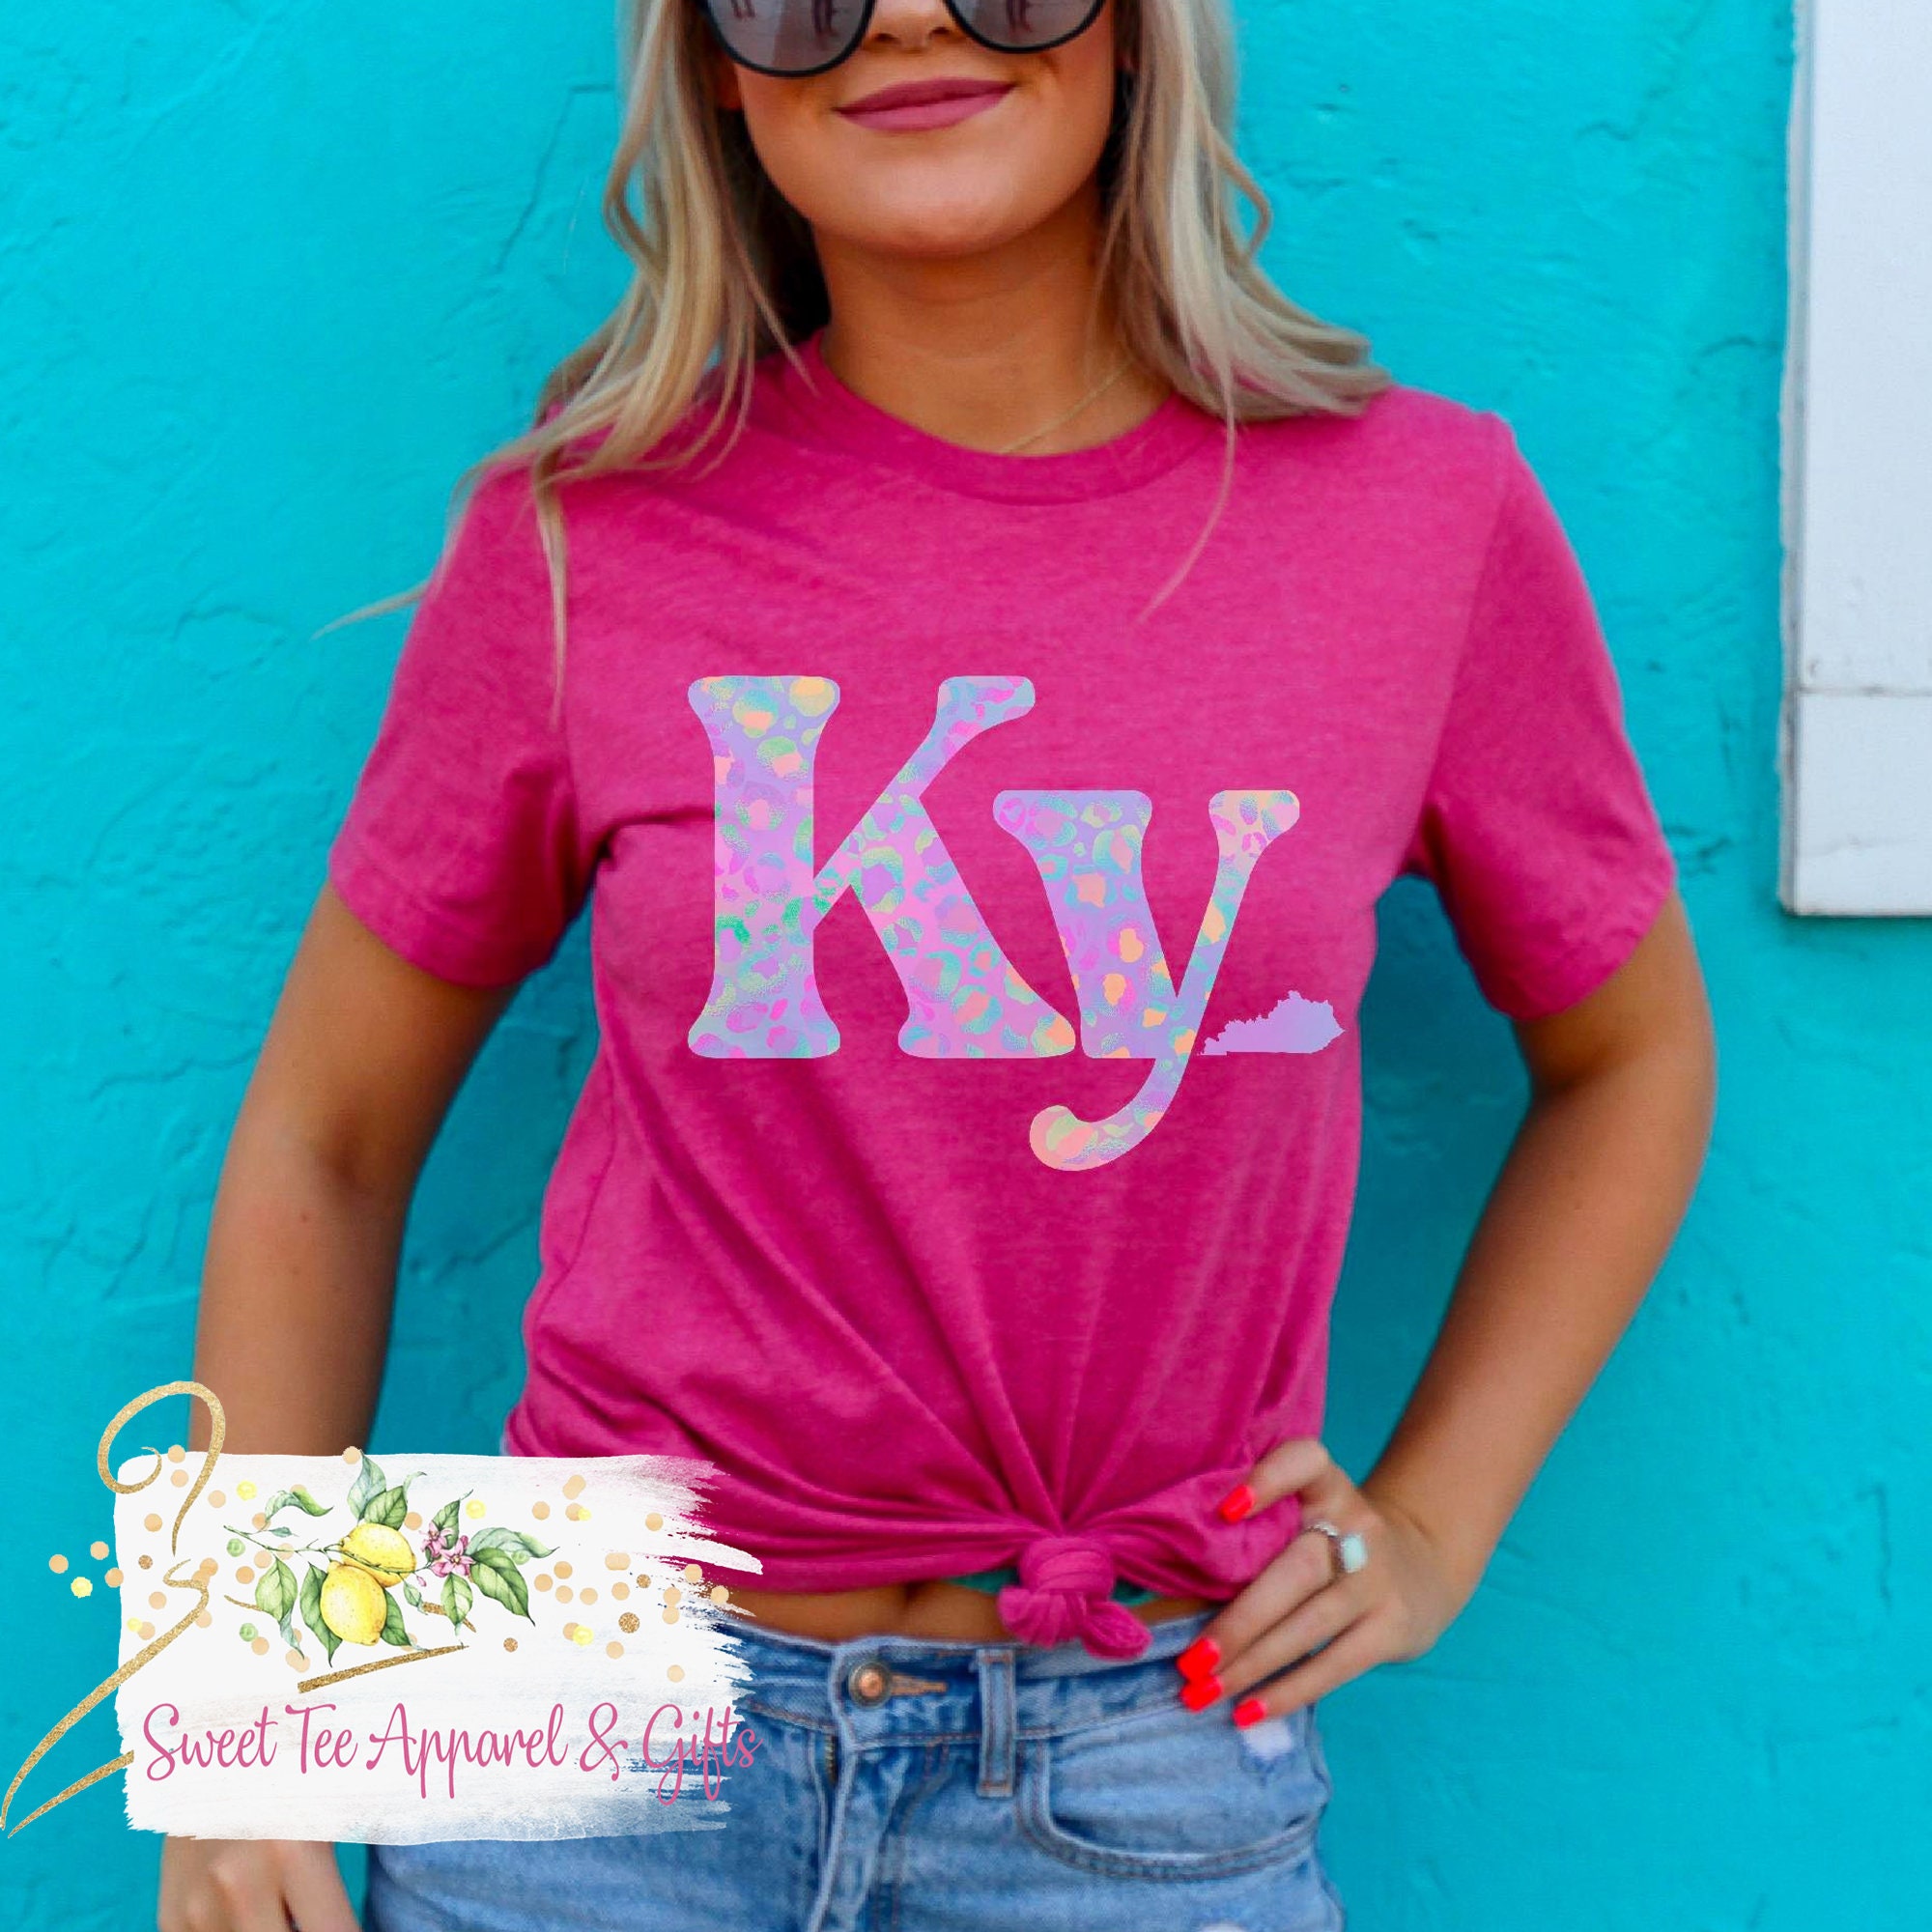 Louisville Slugger Tee Shirt Medium New Tags Kentucky Made In USA Pink